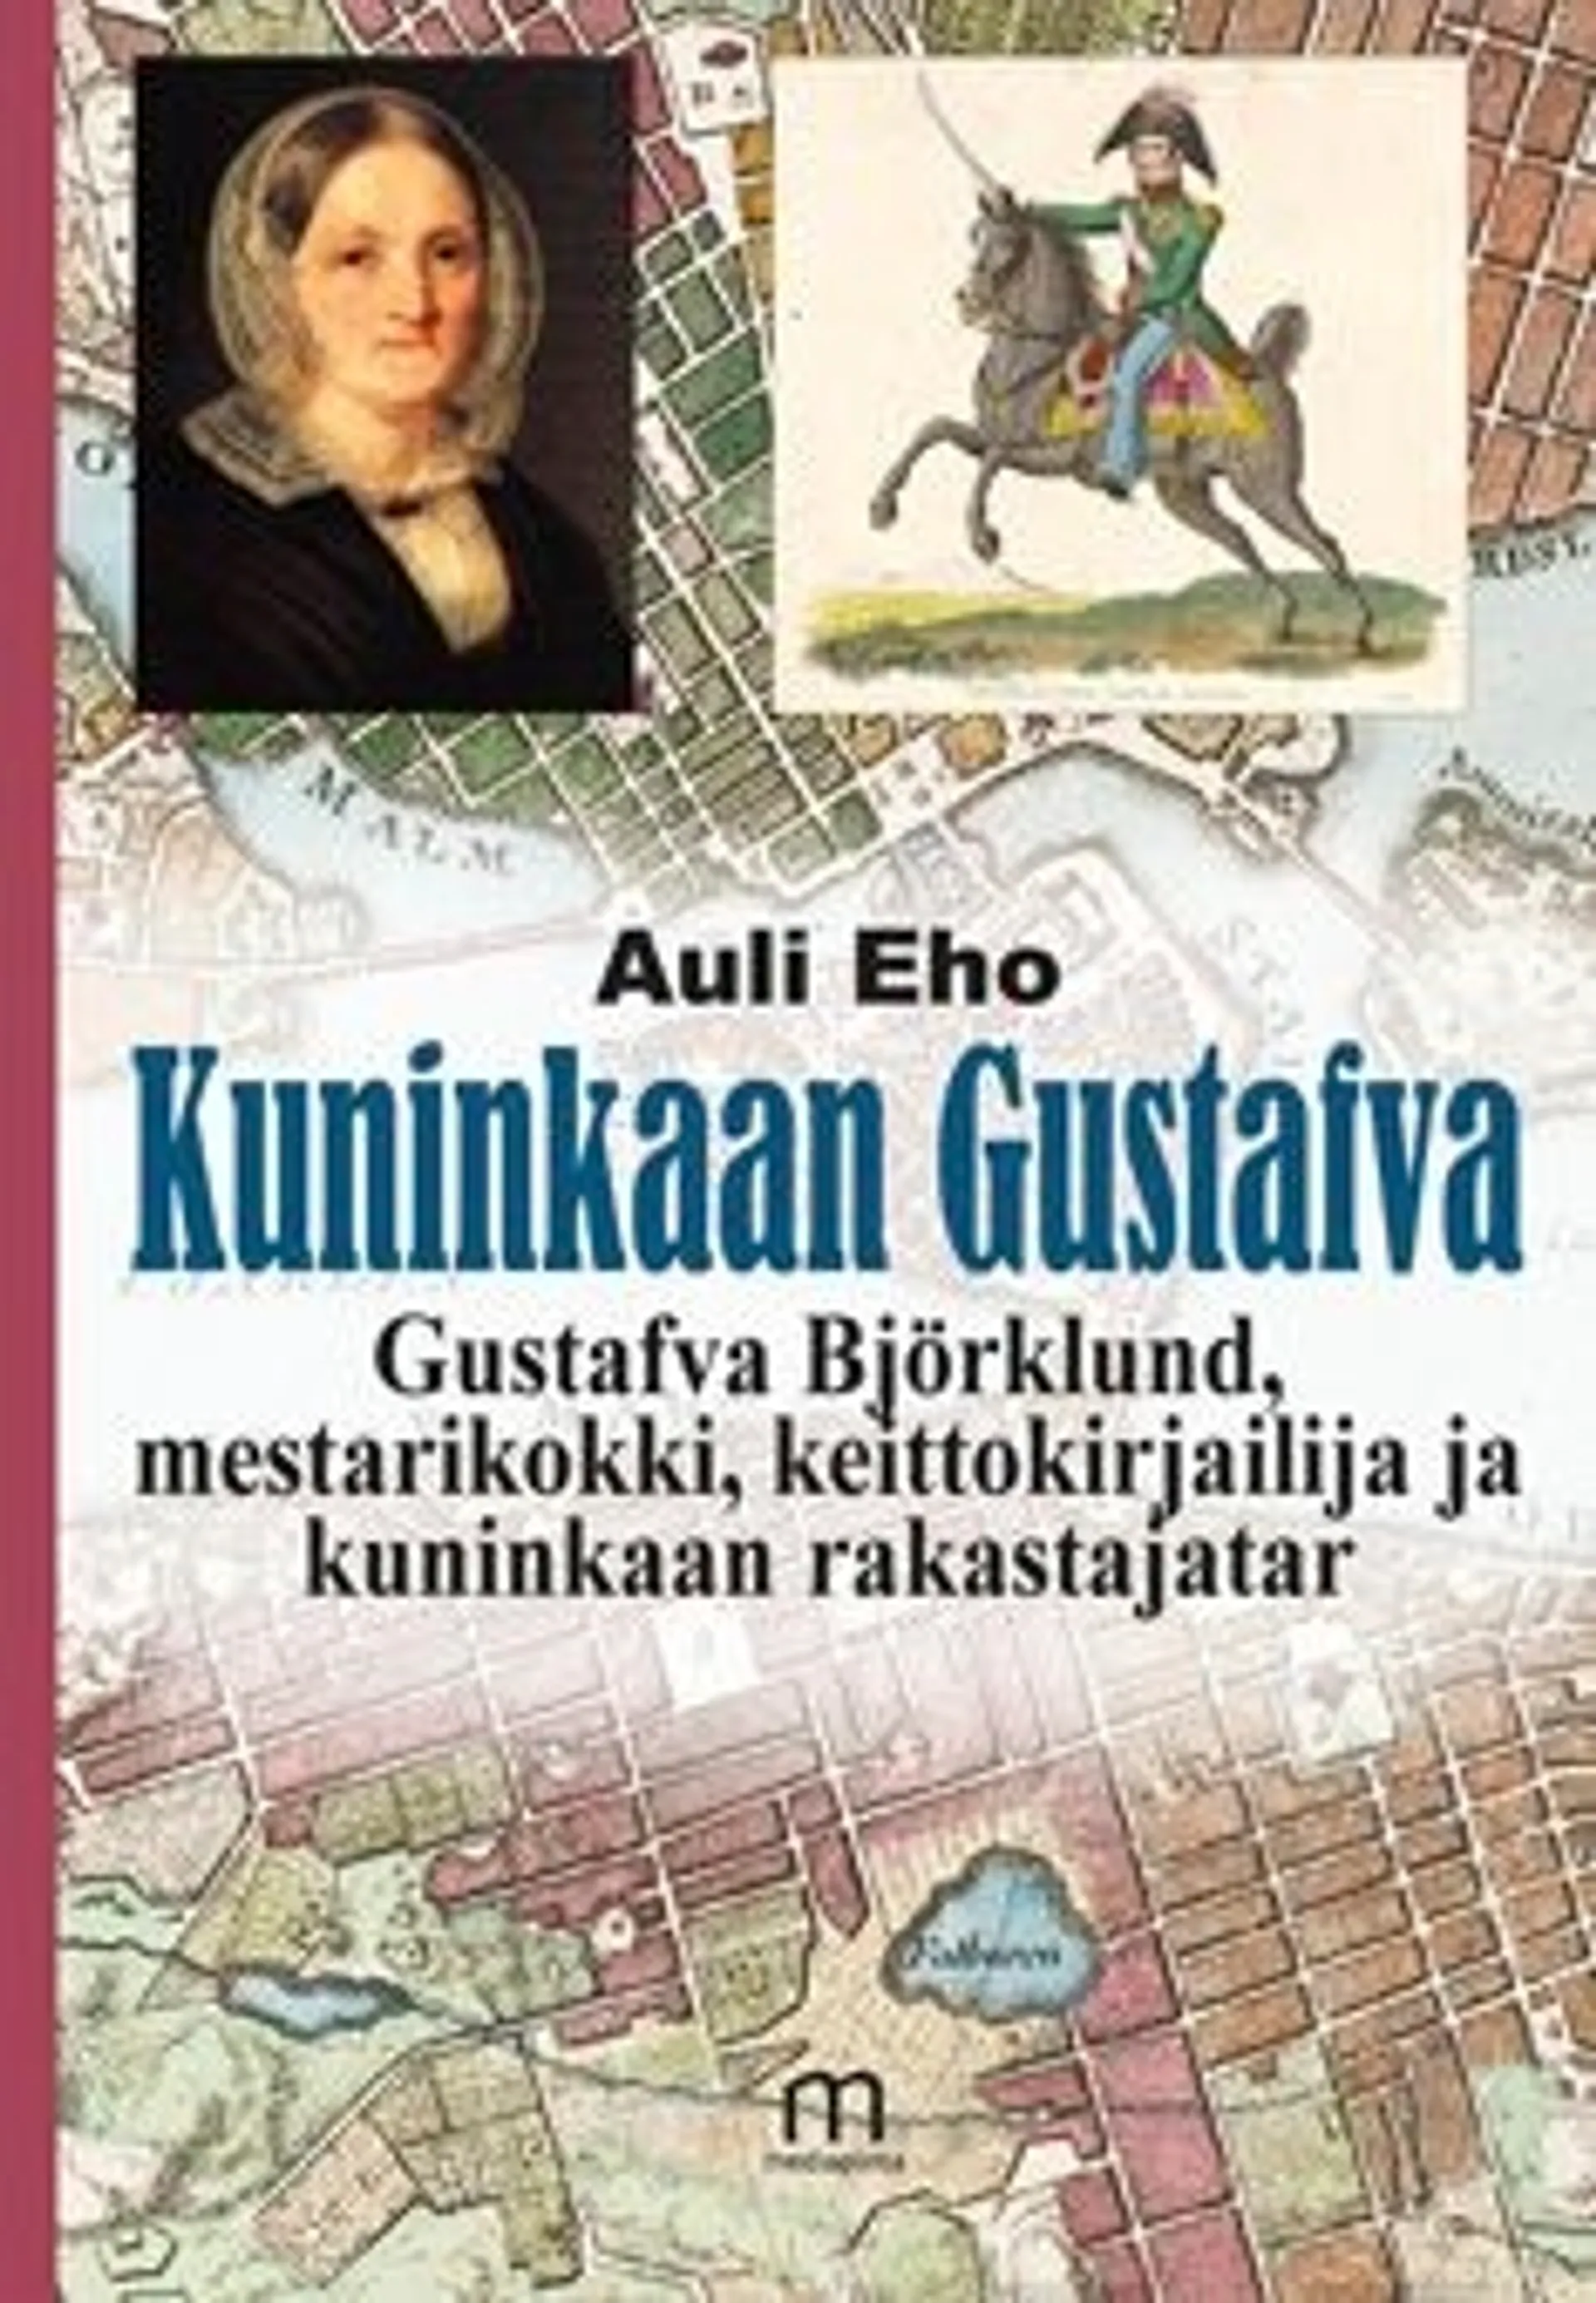 Eho, Kuninkaan Gustafva - Gustafva Björklund, mestarikokki, keittokirjailija ja kuninkaan rakastajatar